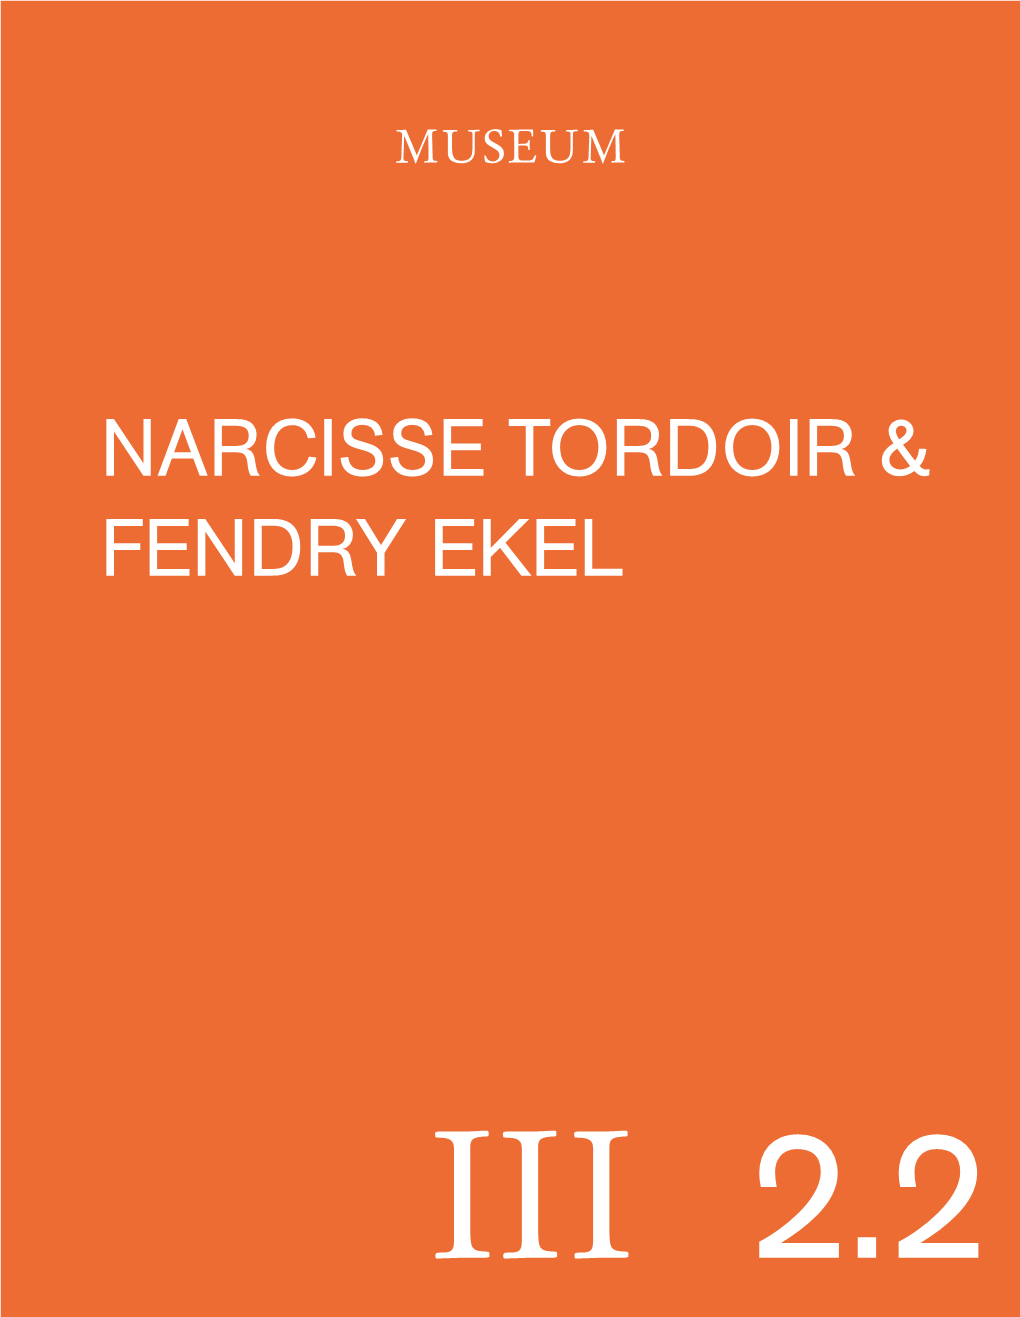 Narcisse Tordoir & Fendry Ekel